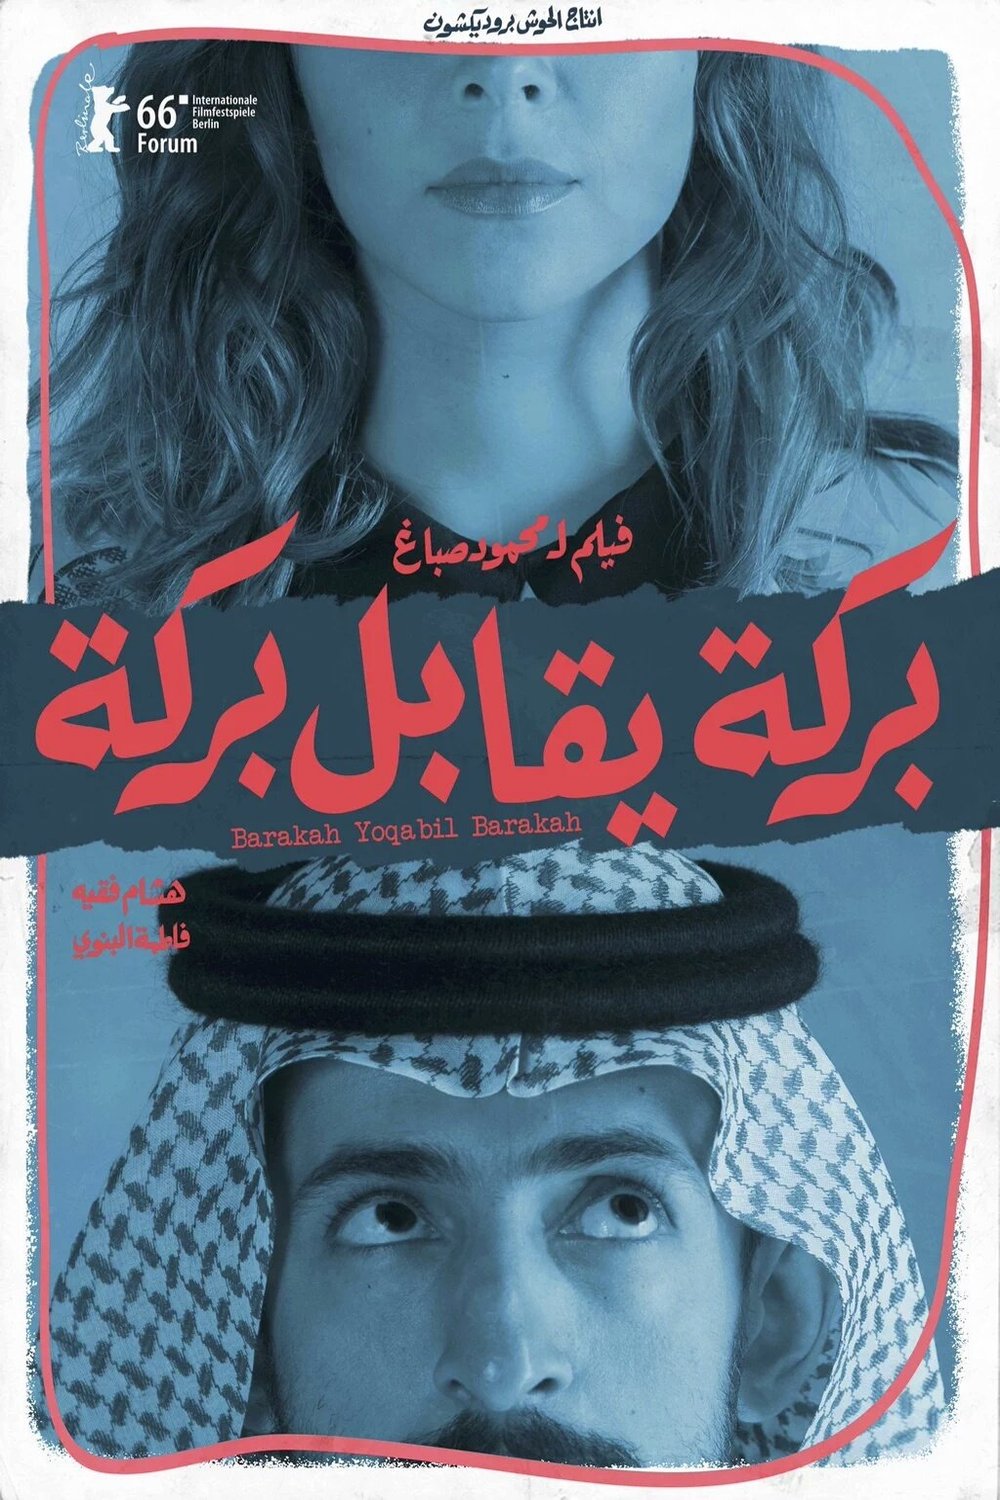 L'affiche du film Barakah Meets Barakah